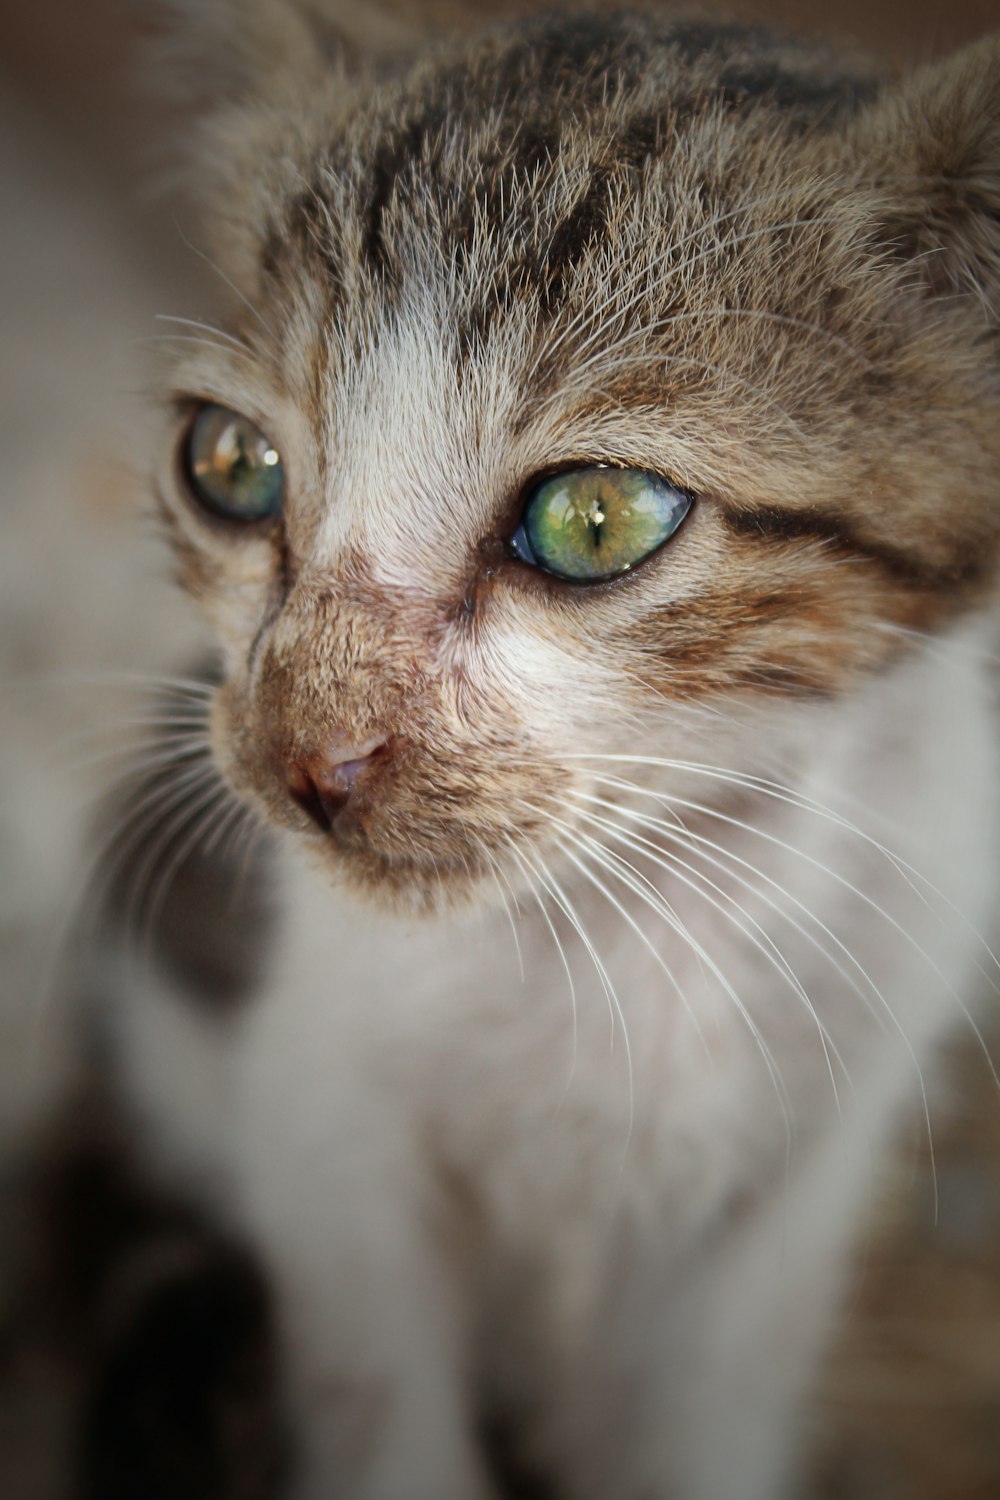 Eine Katze mit grünen Augen